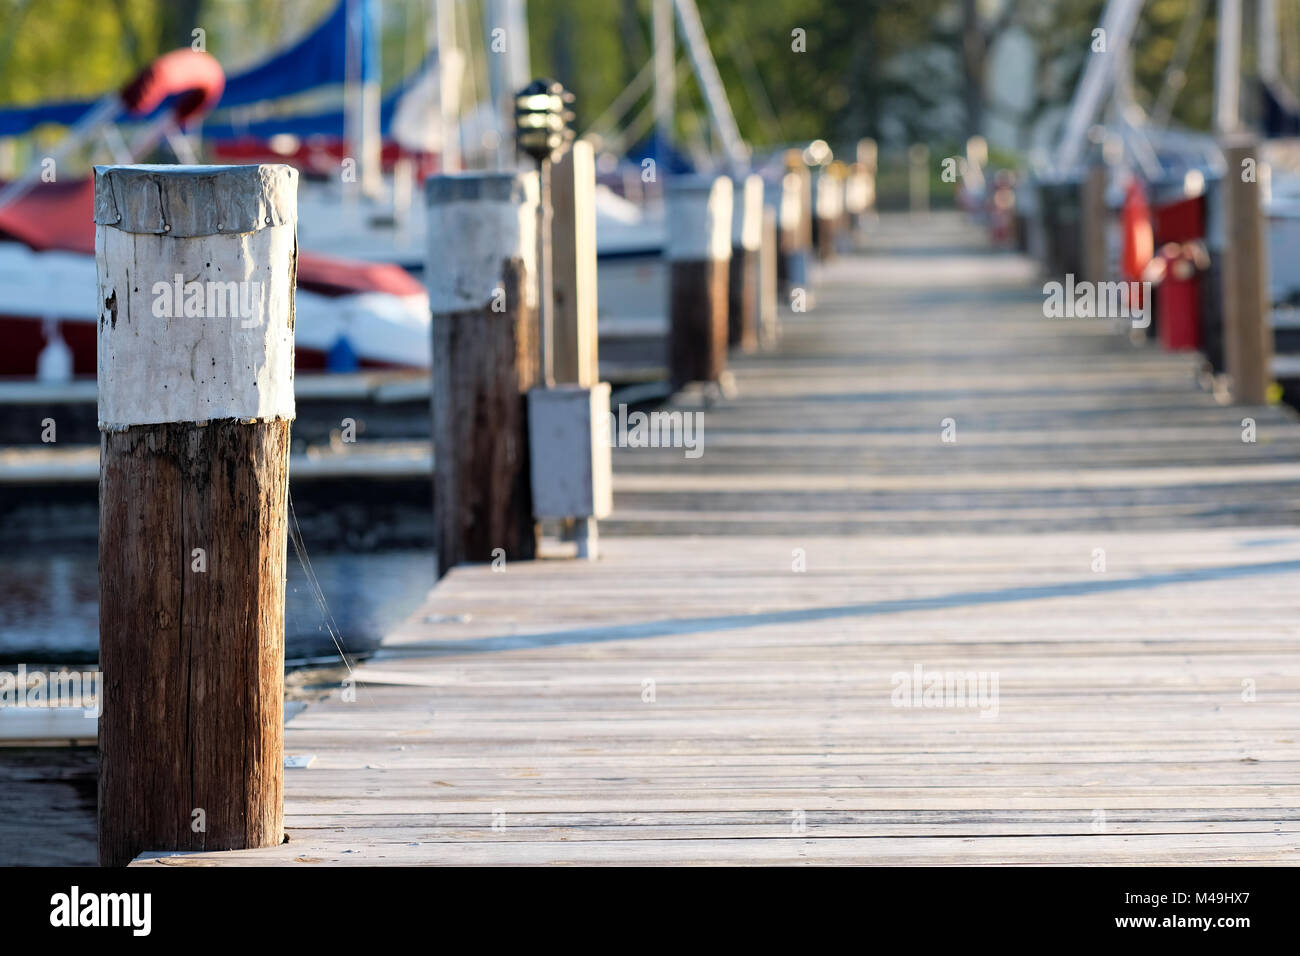 Marina on Lake Cayuga Stock Photo